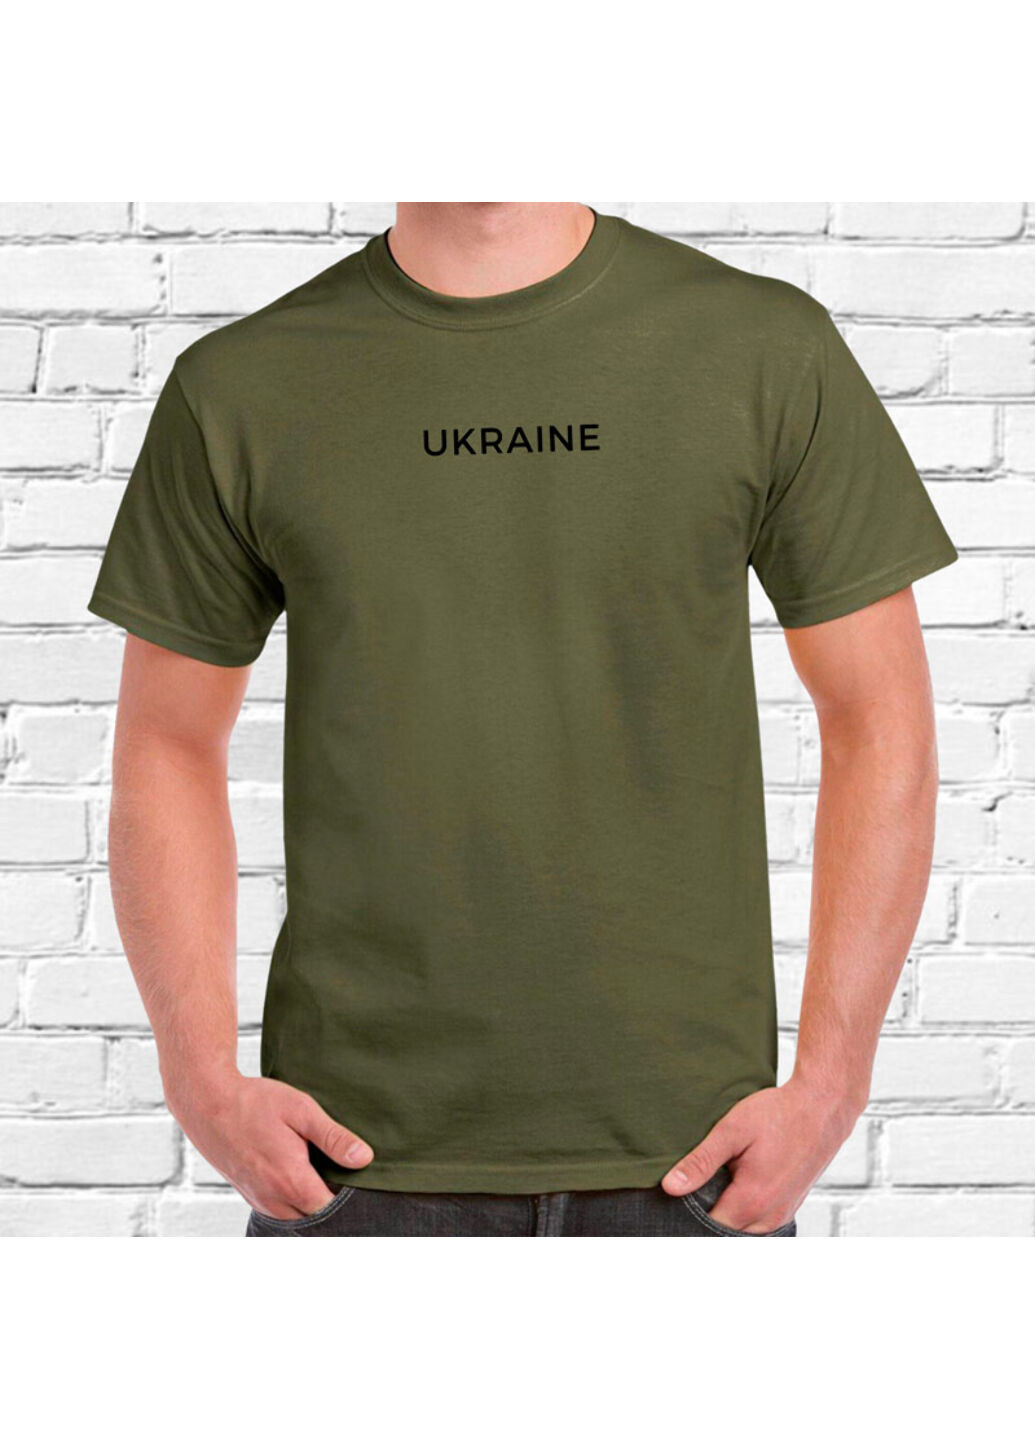 Хаки (оливковая) футболка з вишивкою ukraine мужская хаки s No Brand